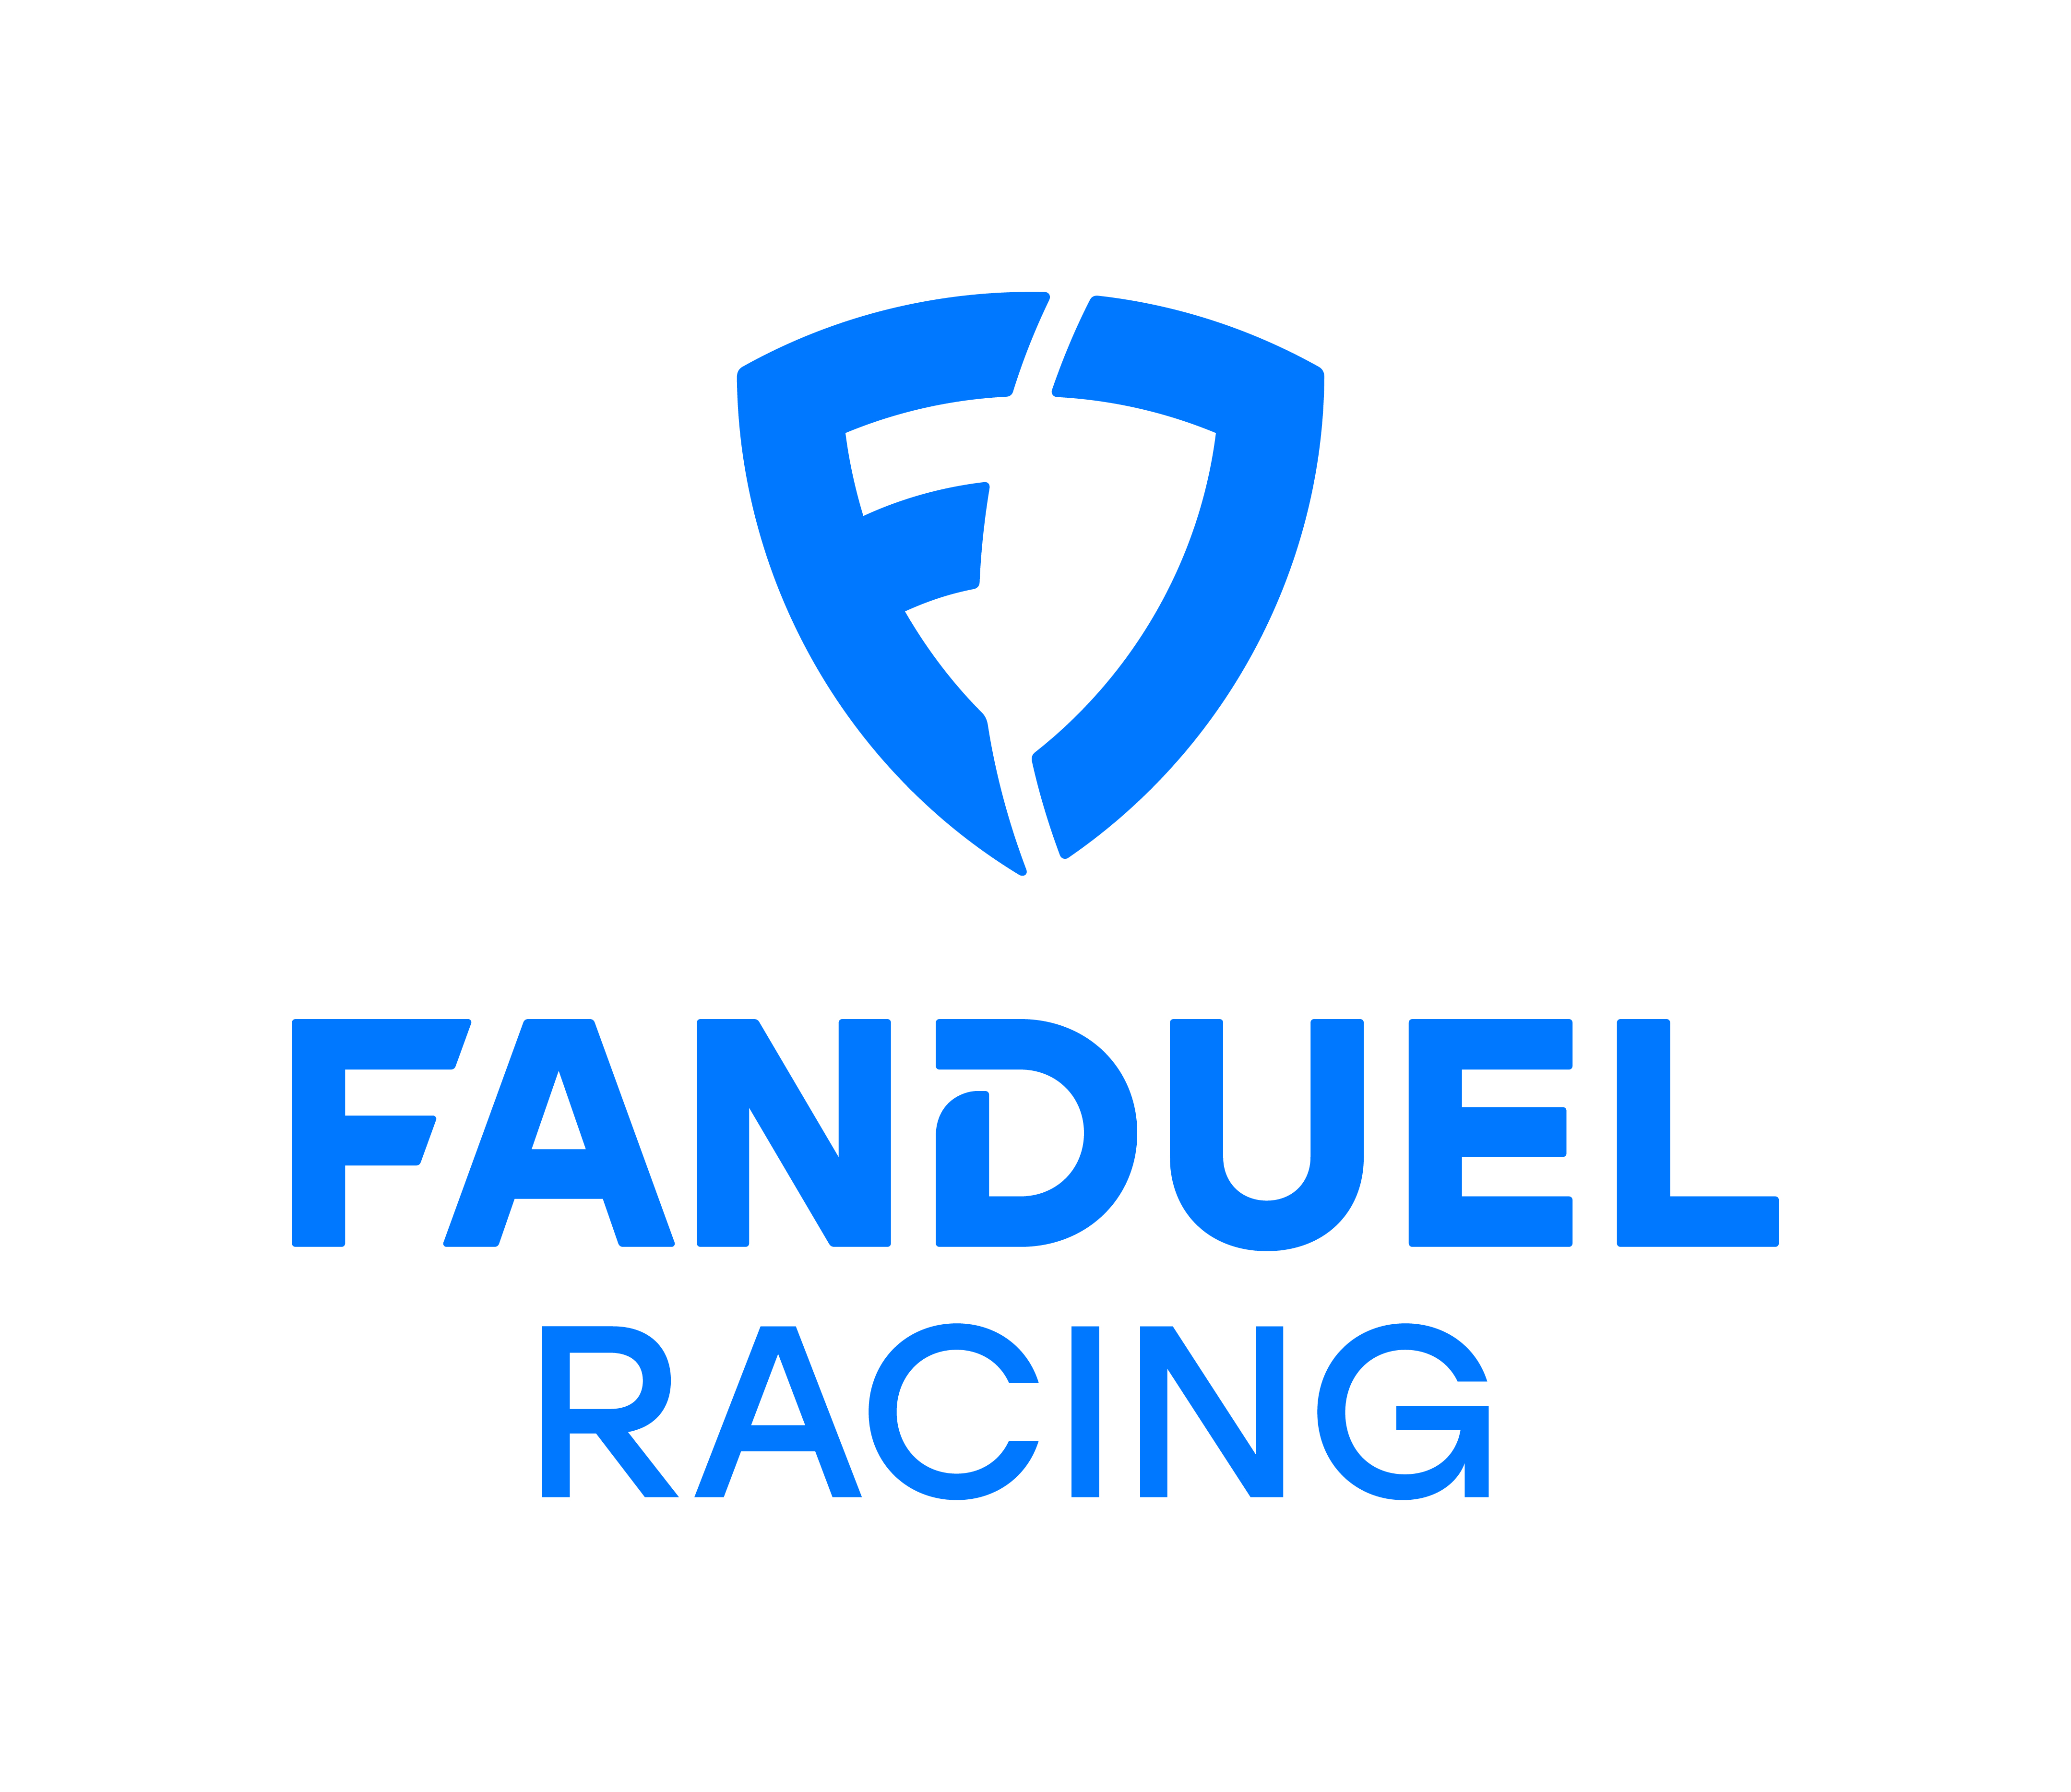 FanDuel racing logo